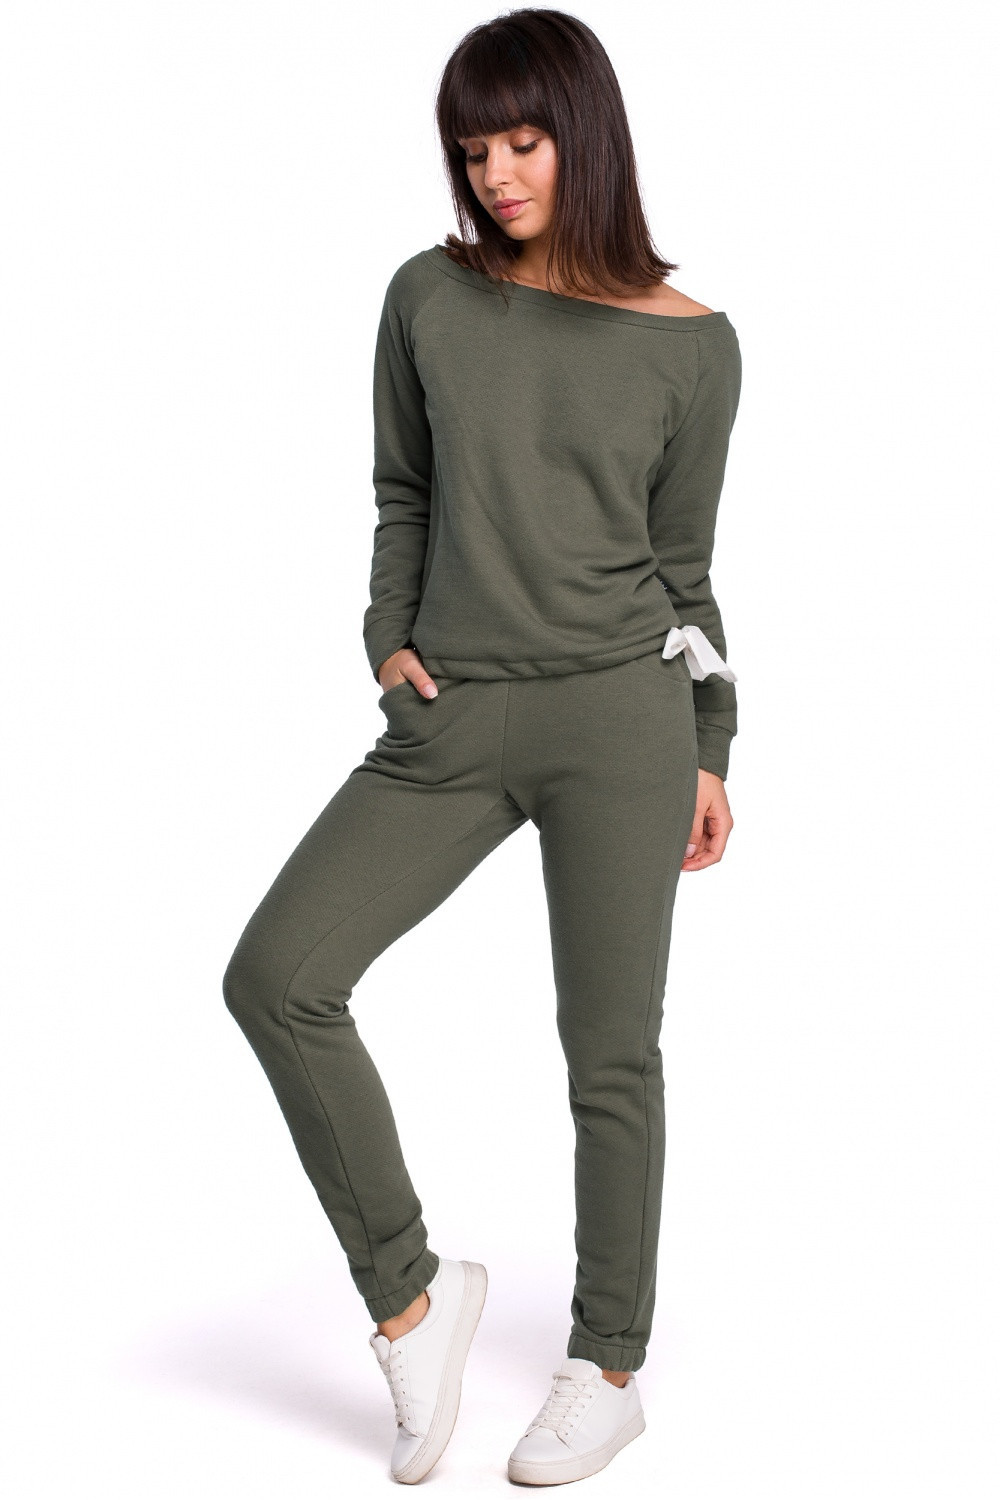 Dámské teplákové kalhoty model 13782159 olivovo zelená S36 - BeWear